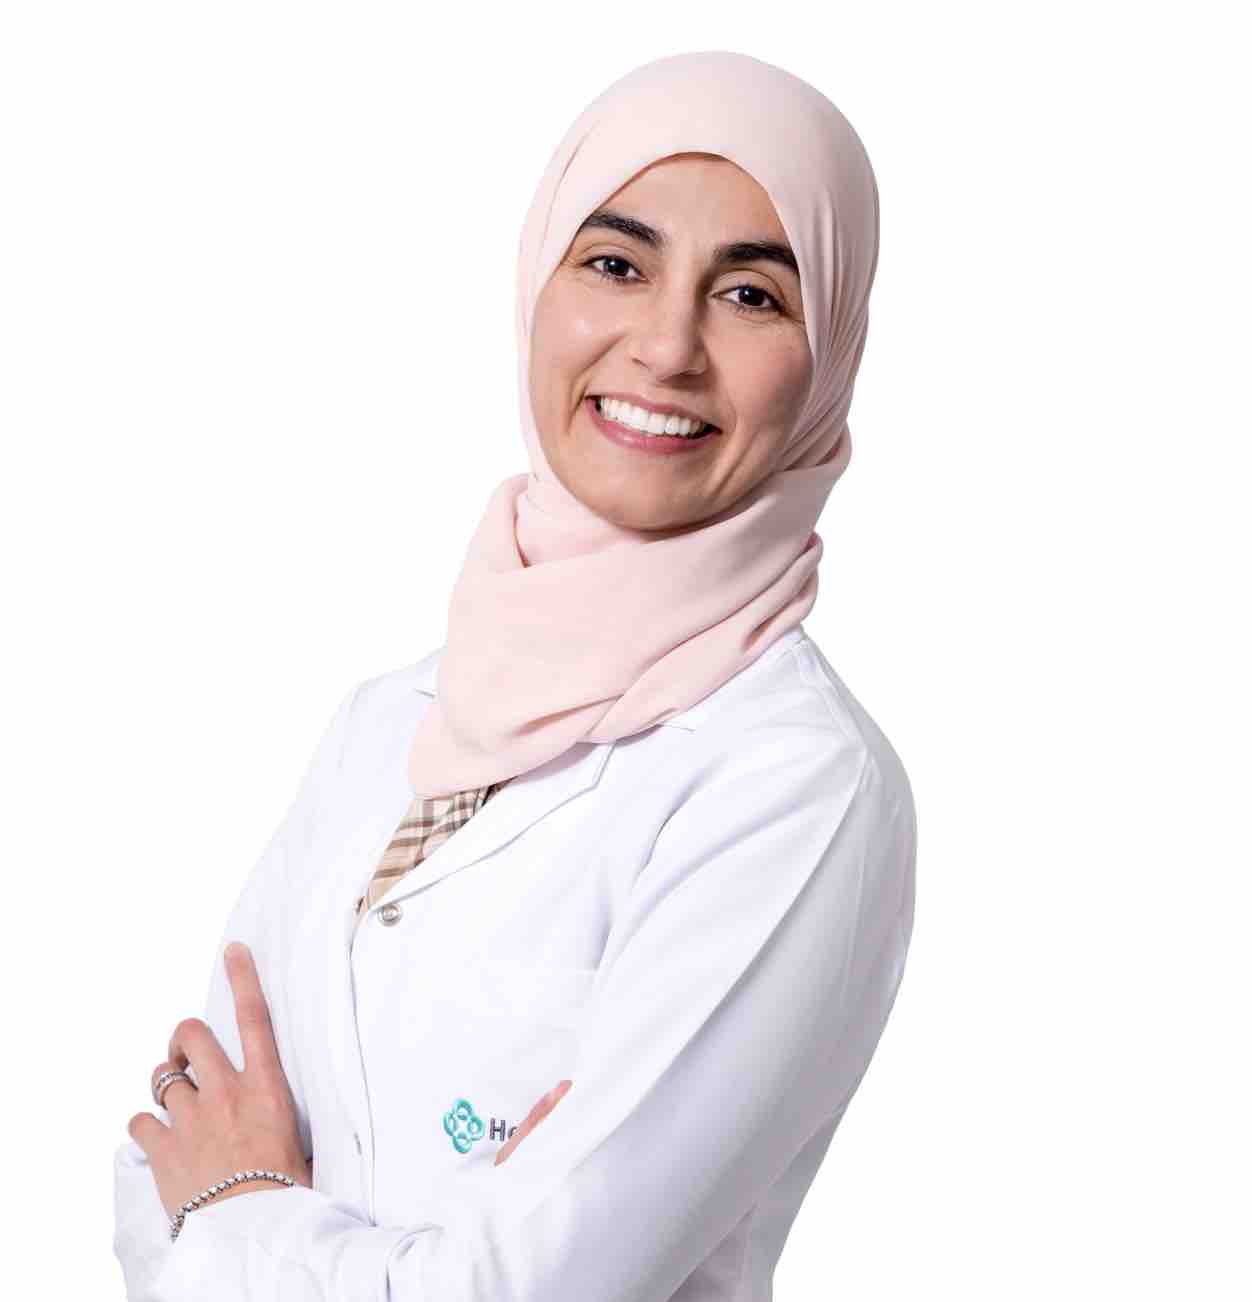 Dr. Deemah M Salem